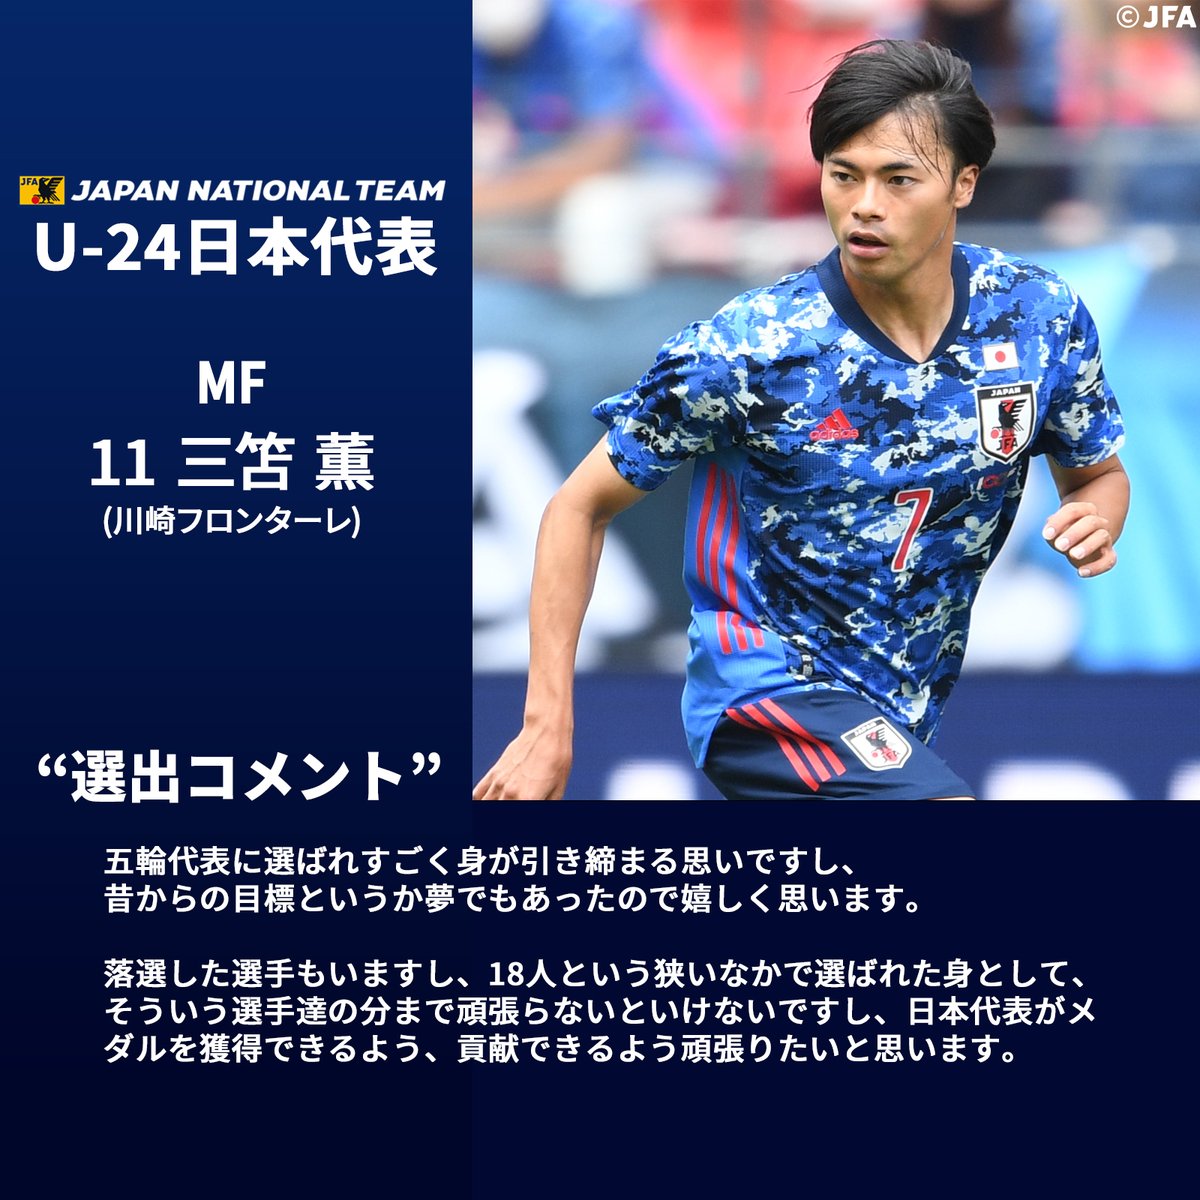 サッカー日本代表 U24日本代表 選出コメント Mf 11 三笘薫 選手 五輪代表に選ばれすごく身が引き締まる思いですし 昔からの目標というか夢でもあったので嬉しく思います Frontale Staff Kaoru Mitoma 川崎フロンターレ Frontale Jfa